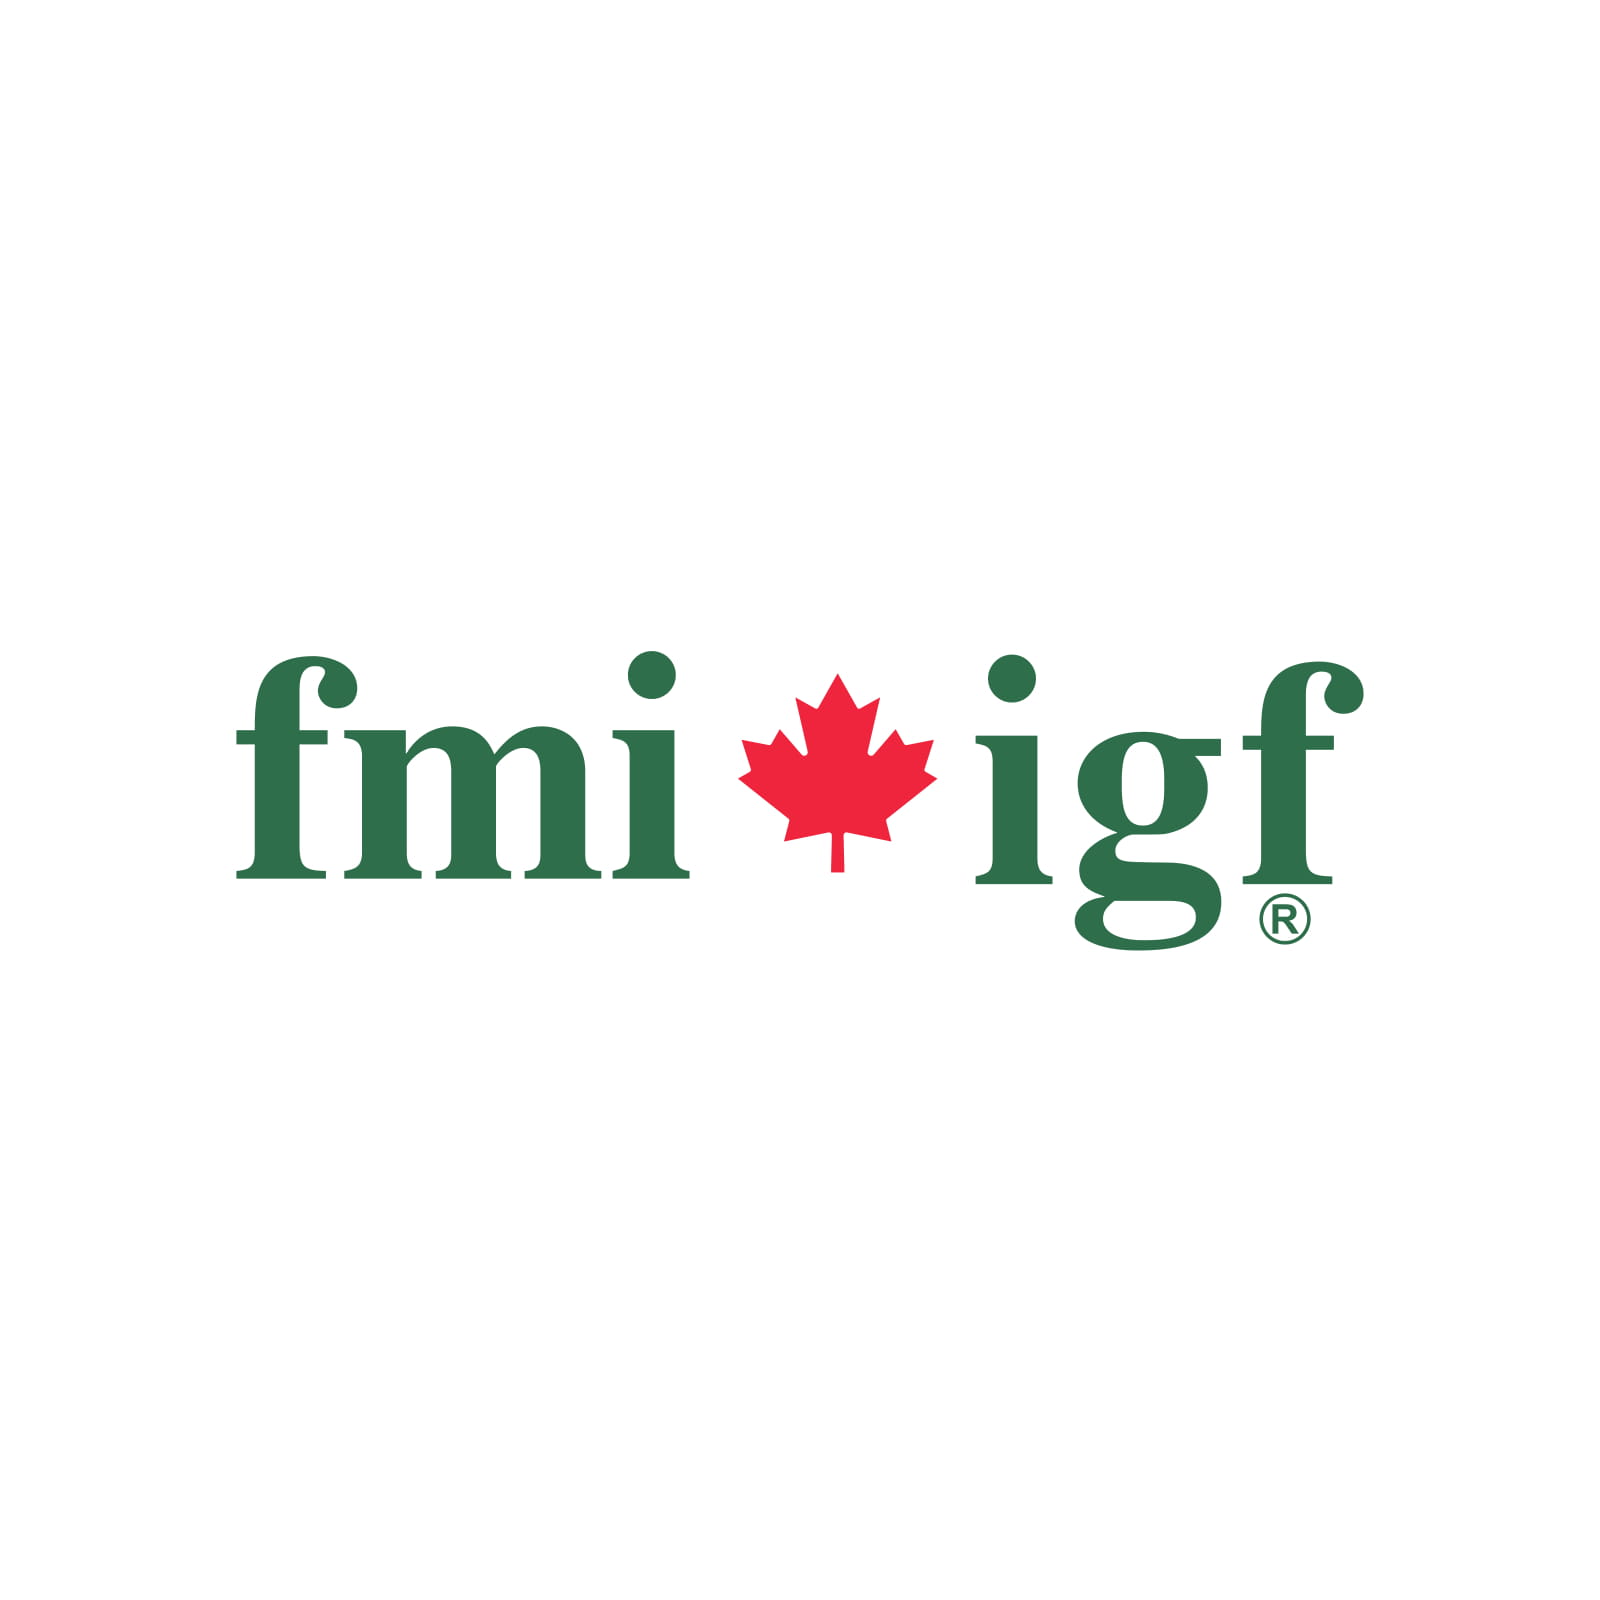 (c) Fmi.ca